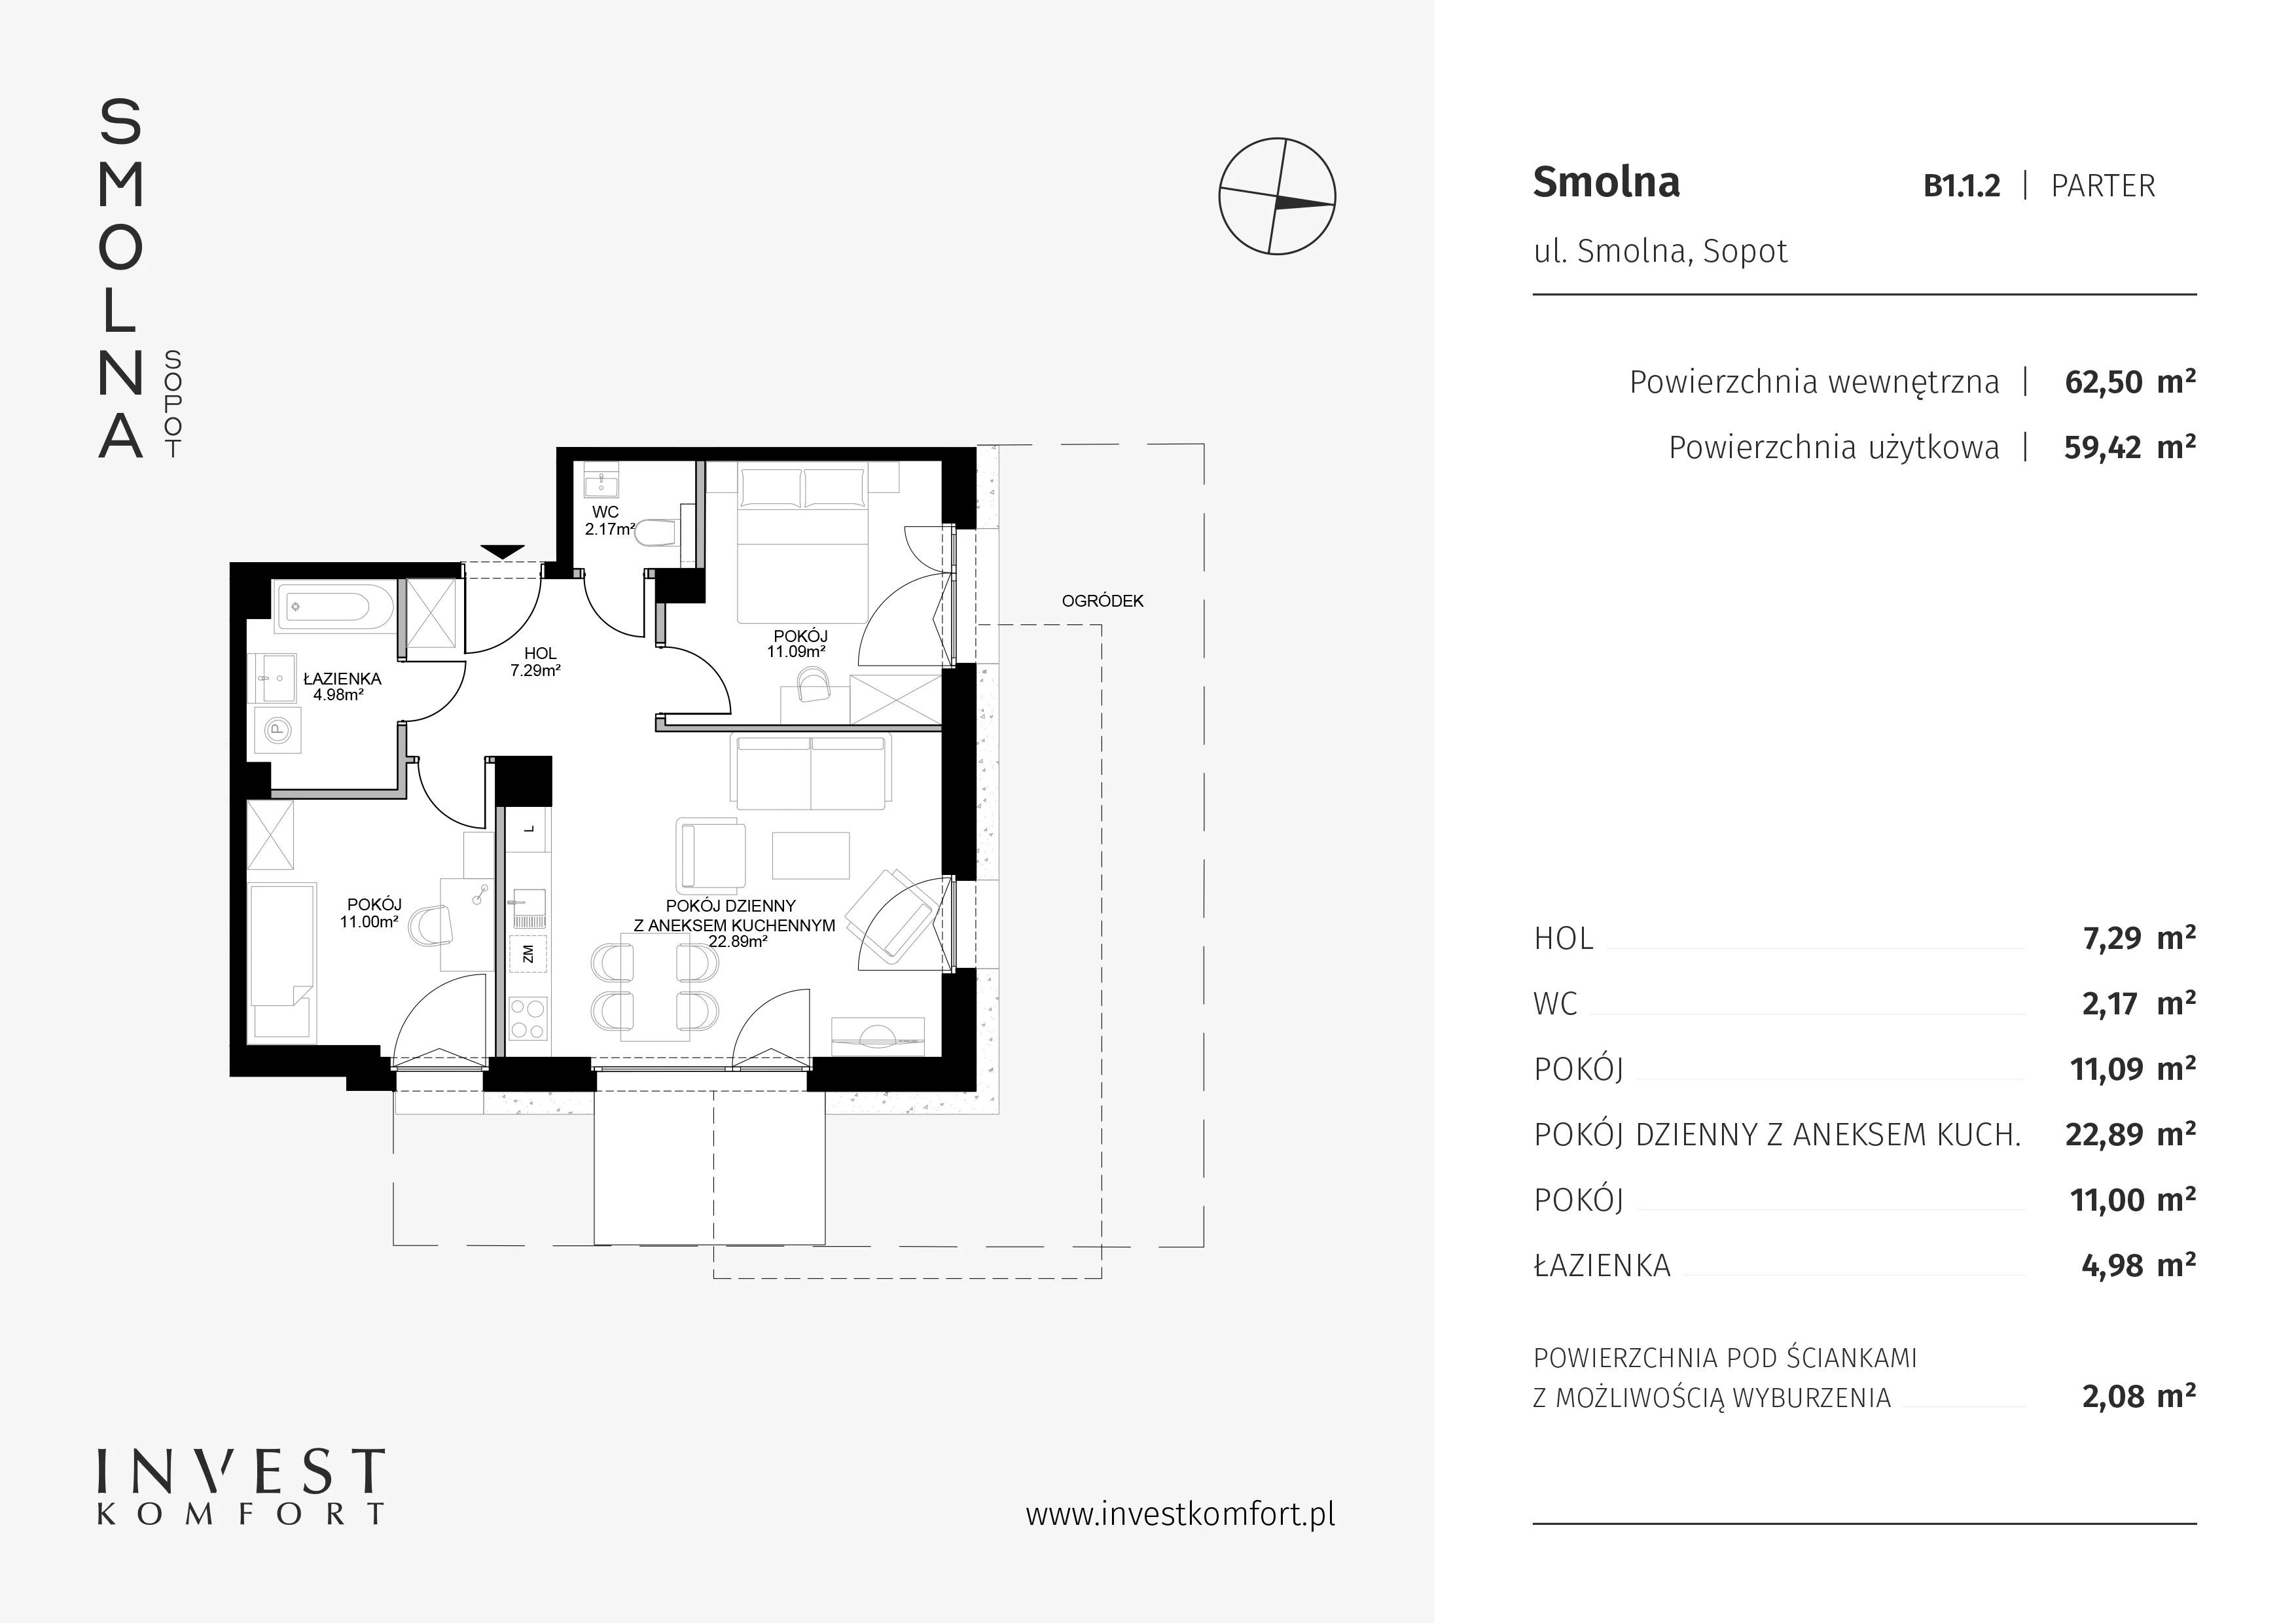 Mieszkanie 62,50 m², parter, oferta nr B1.1.2, Smolna, Sopot, Świemirowo, ul. Smolna